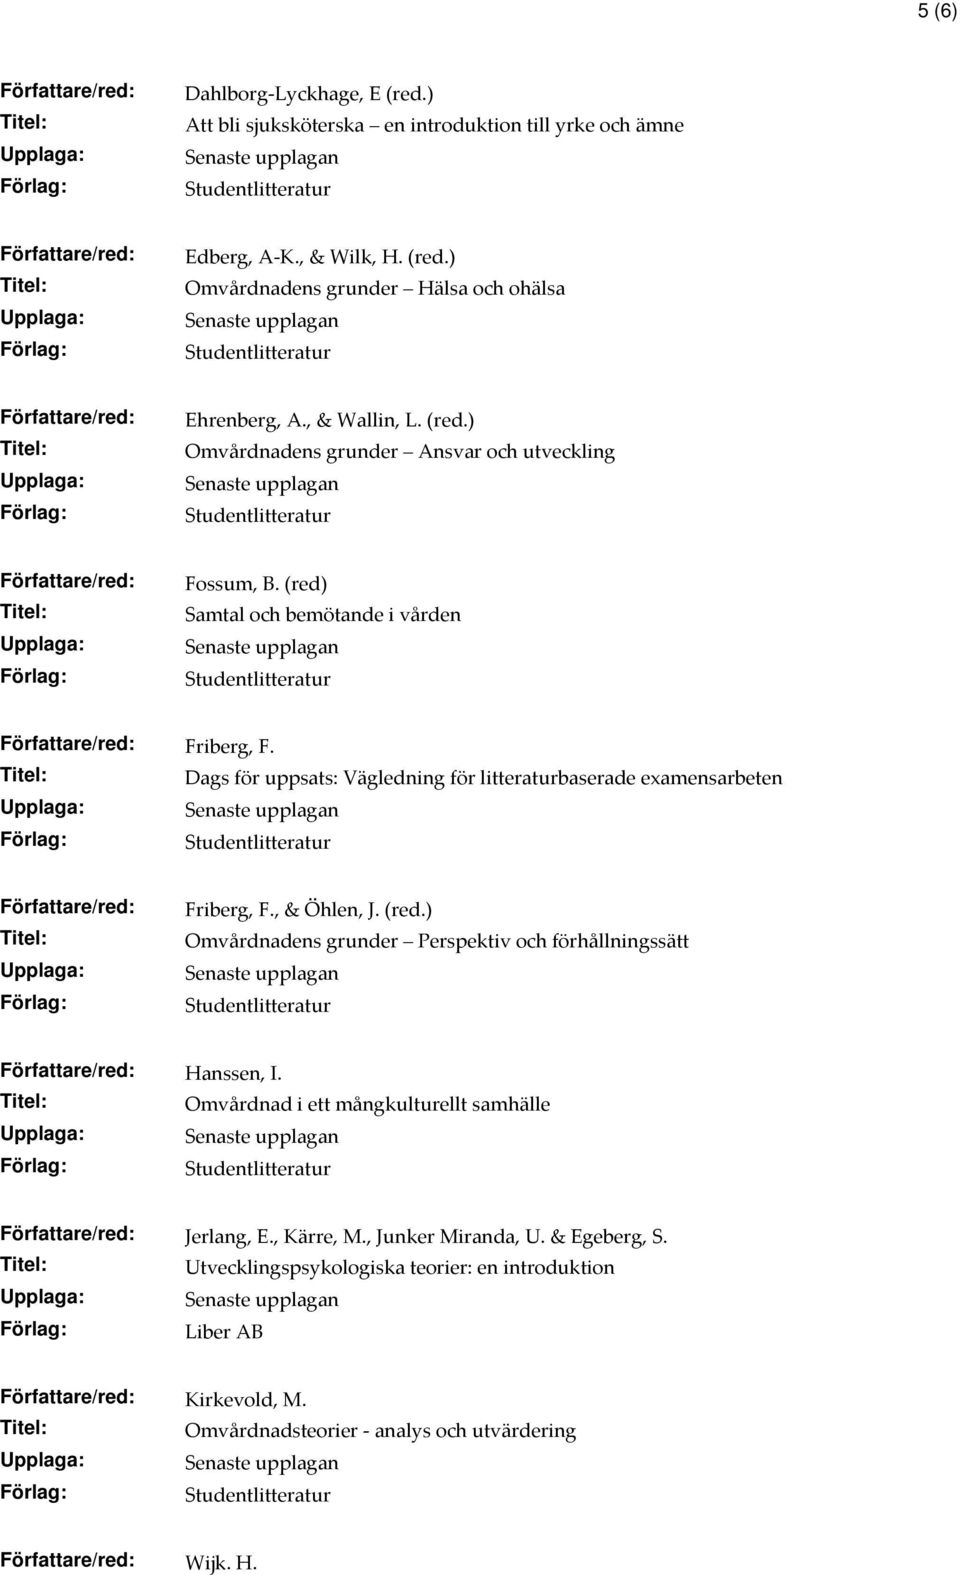 Dags för uppsats: Vägledning för litteraturbaserade examensarbeten Friberg, F., & Öhlen, J. (red.) Omvårdnadens grunder Perspektiv och förhållningssätt Hanssen, I.